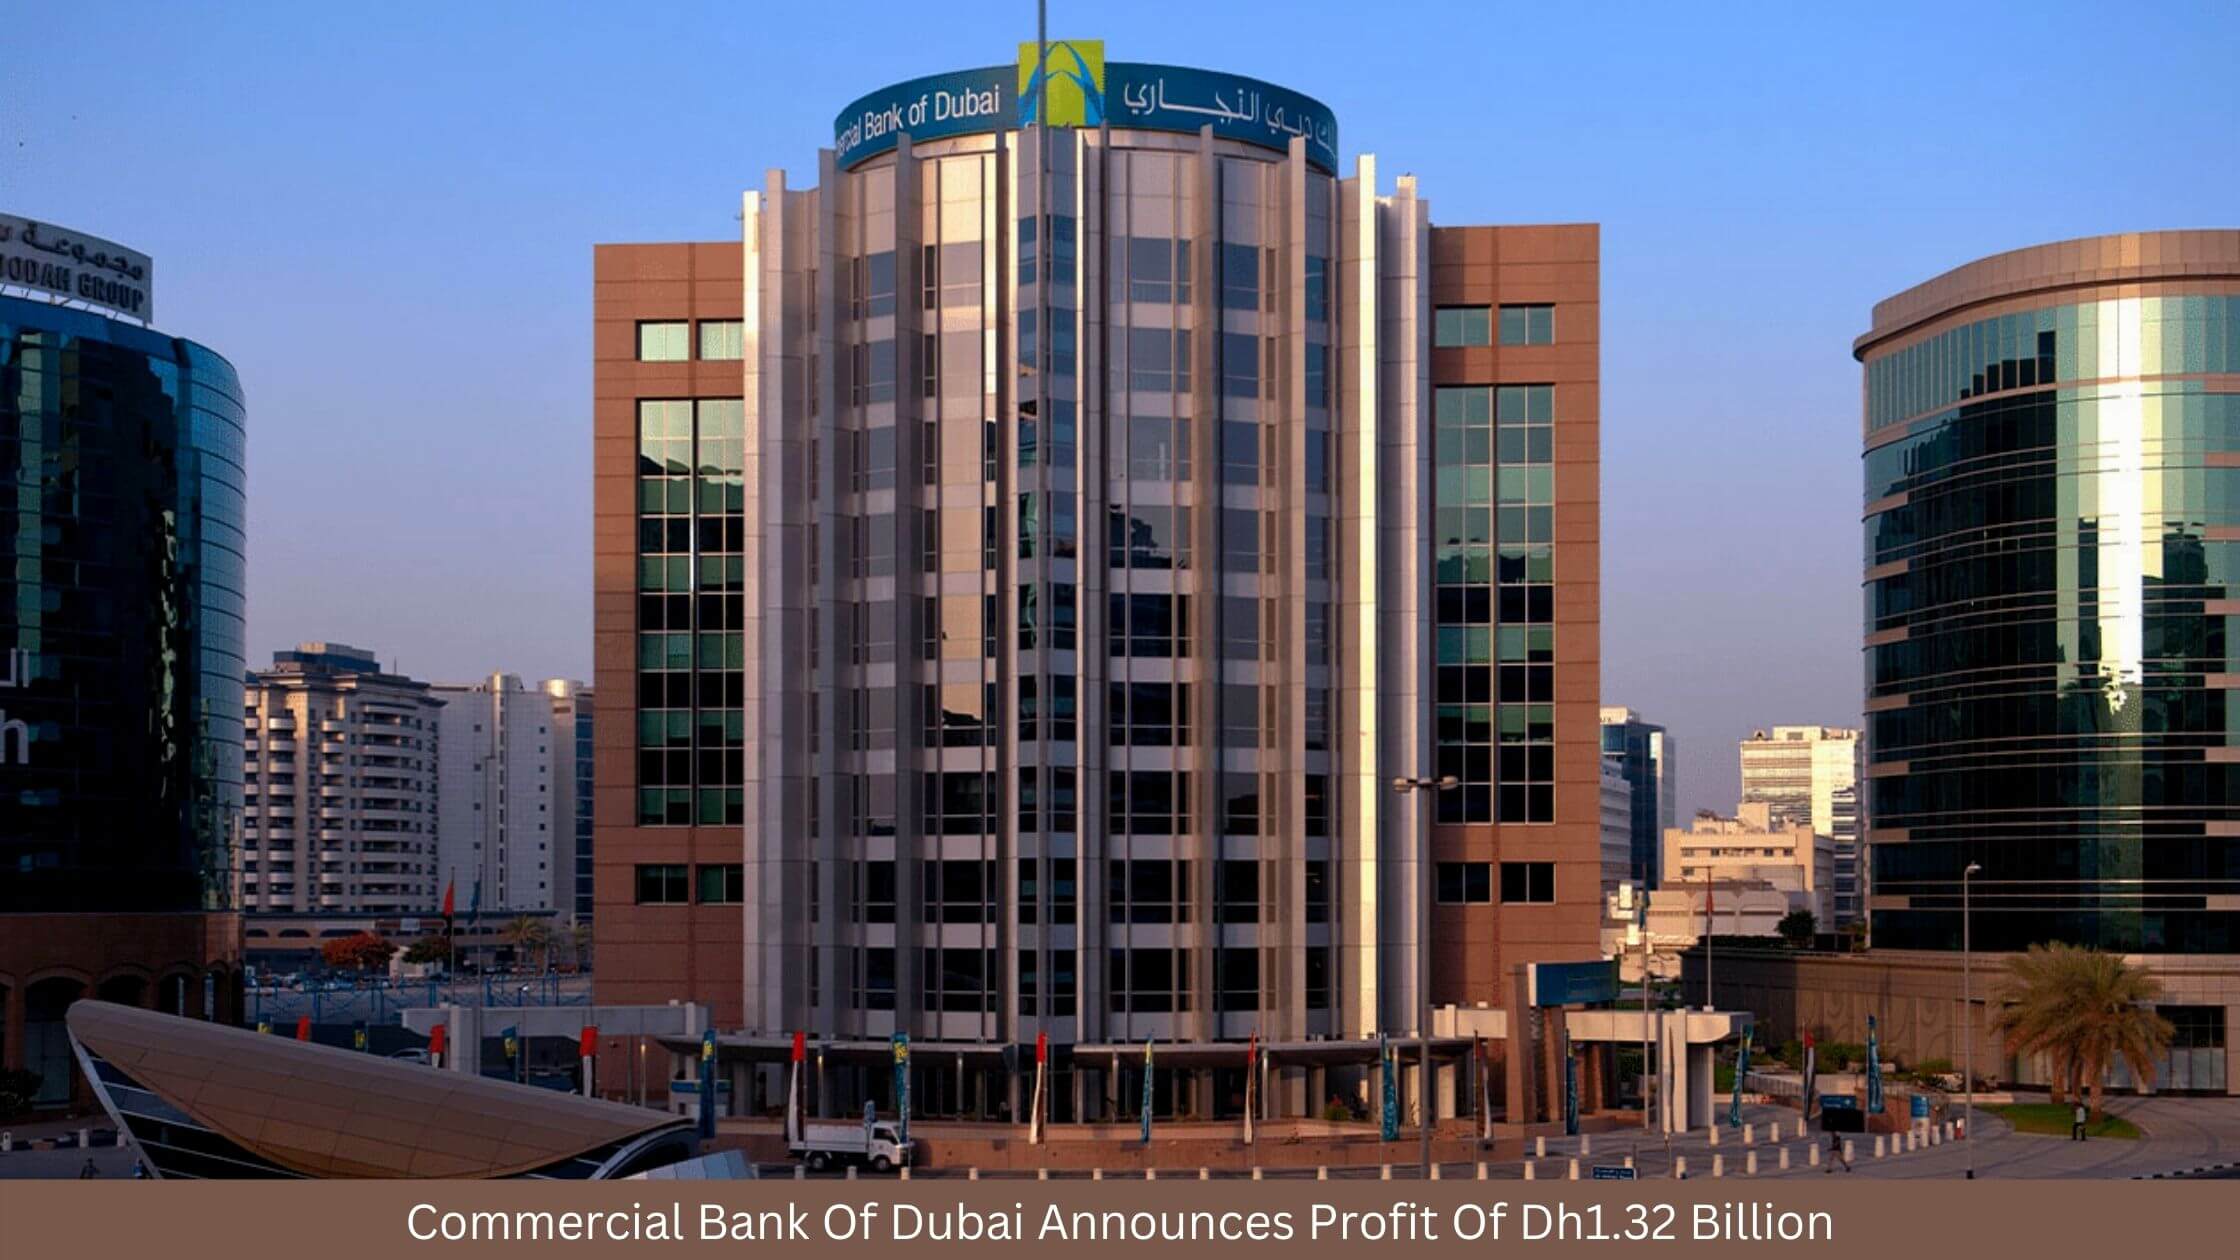 Commercial Bank Of Dubai Announces Profit Of Dh1.32 Billion